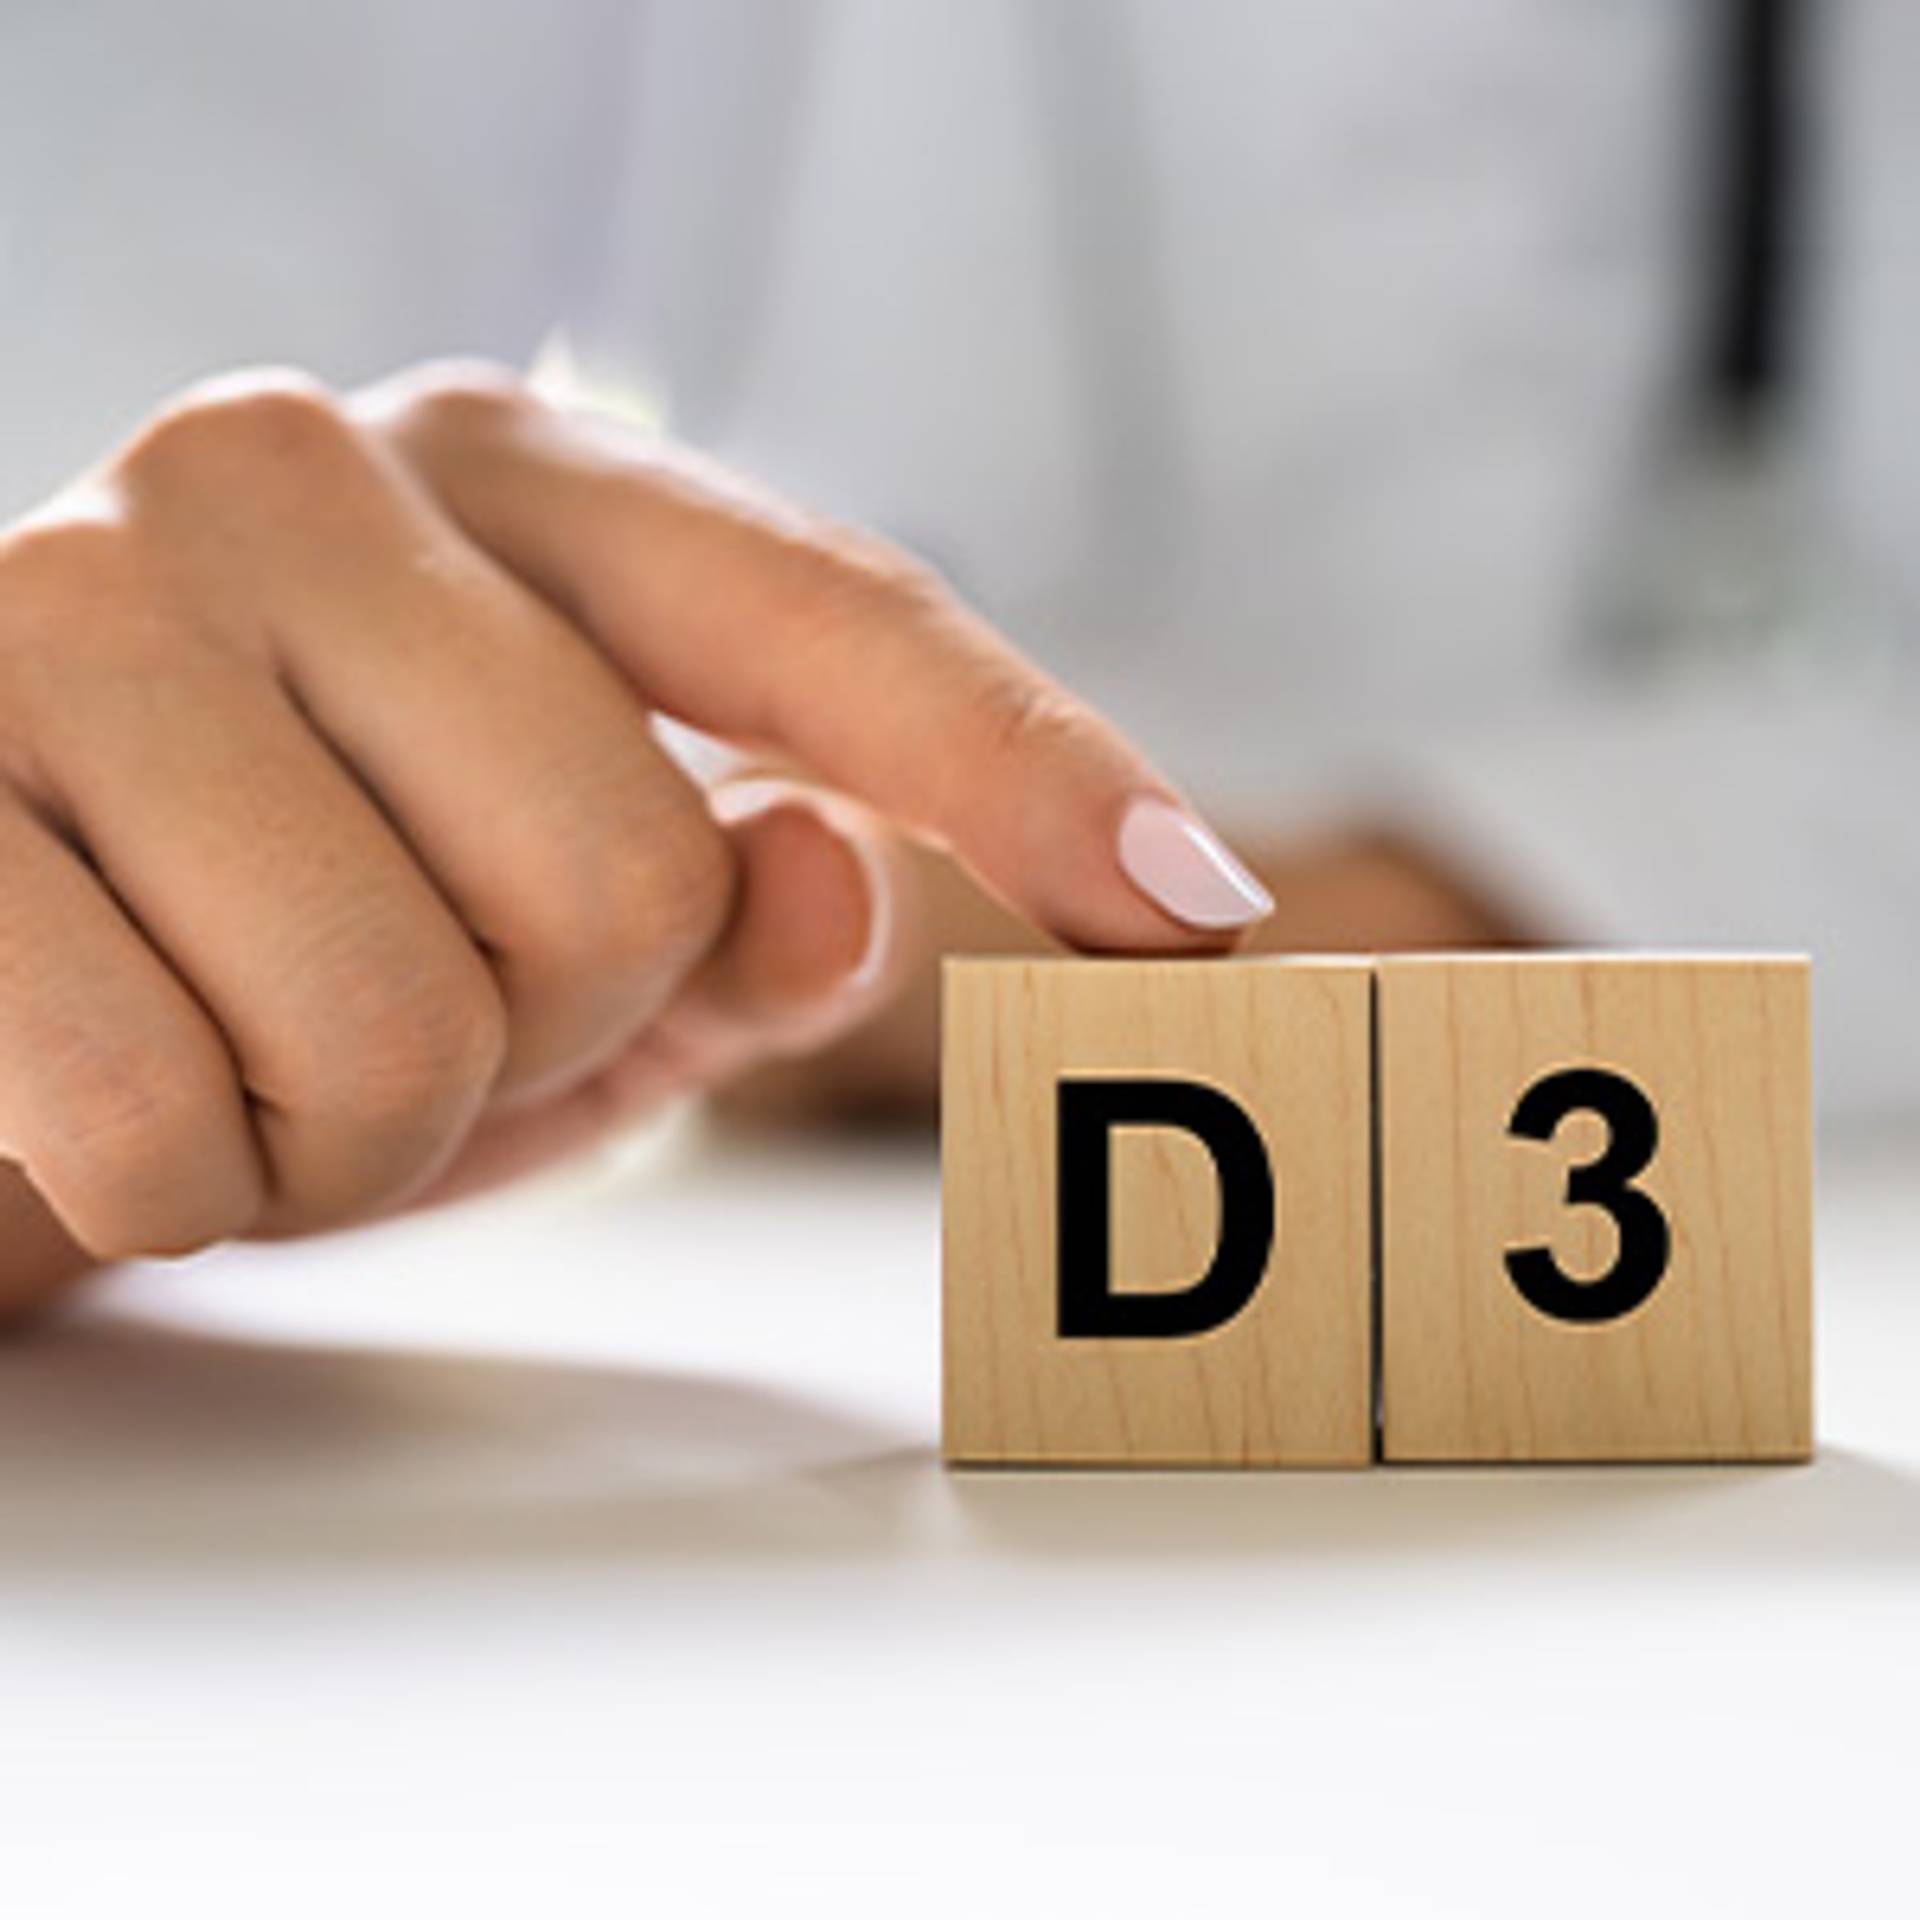 Was ist der Unterschied zwischen Vitamin D2 und D3?